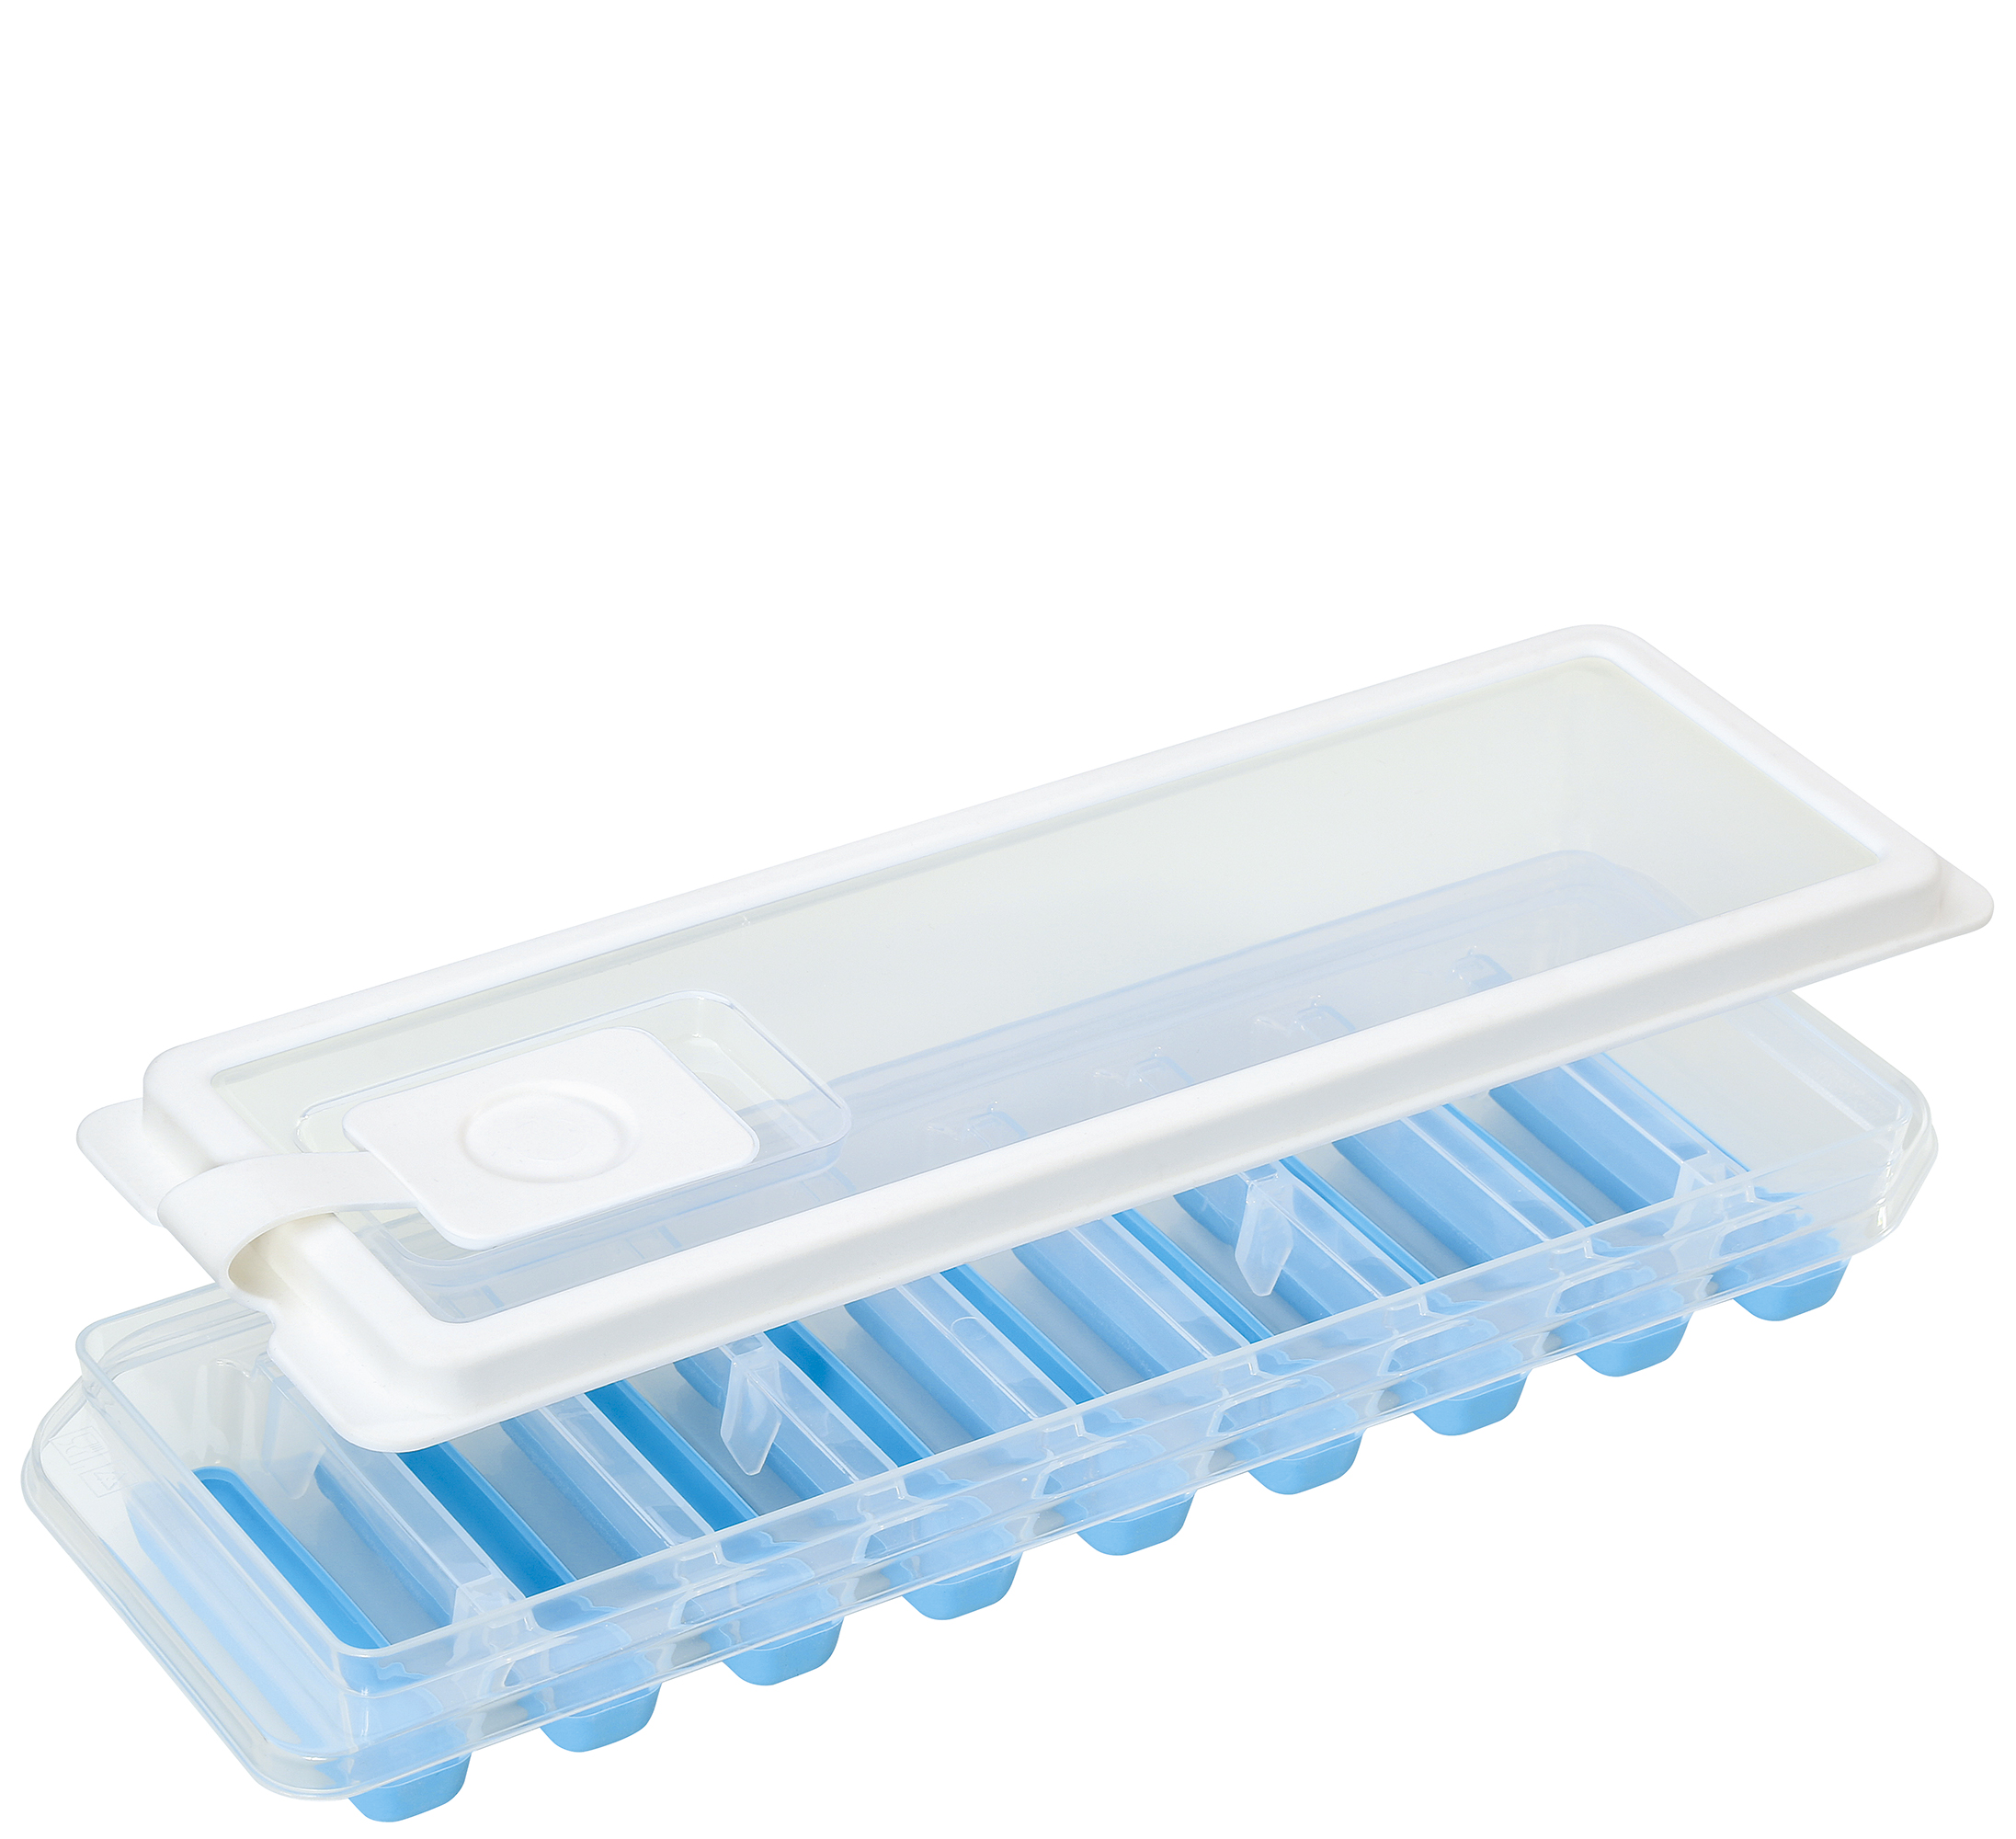 Eiswürfelform STICKS PLUS Inkl. Deckel mit Einfüllöffnung Mit flexiblem Bode Für 9 Eiswürfel Hochwertiger BPA-freier Kunststoff